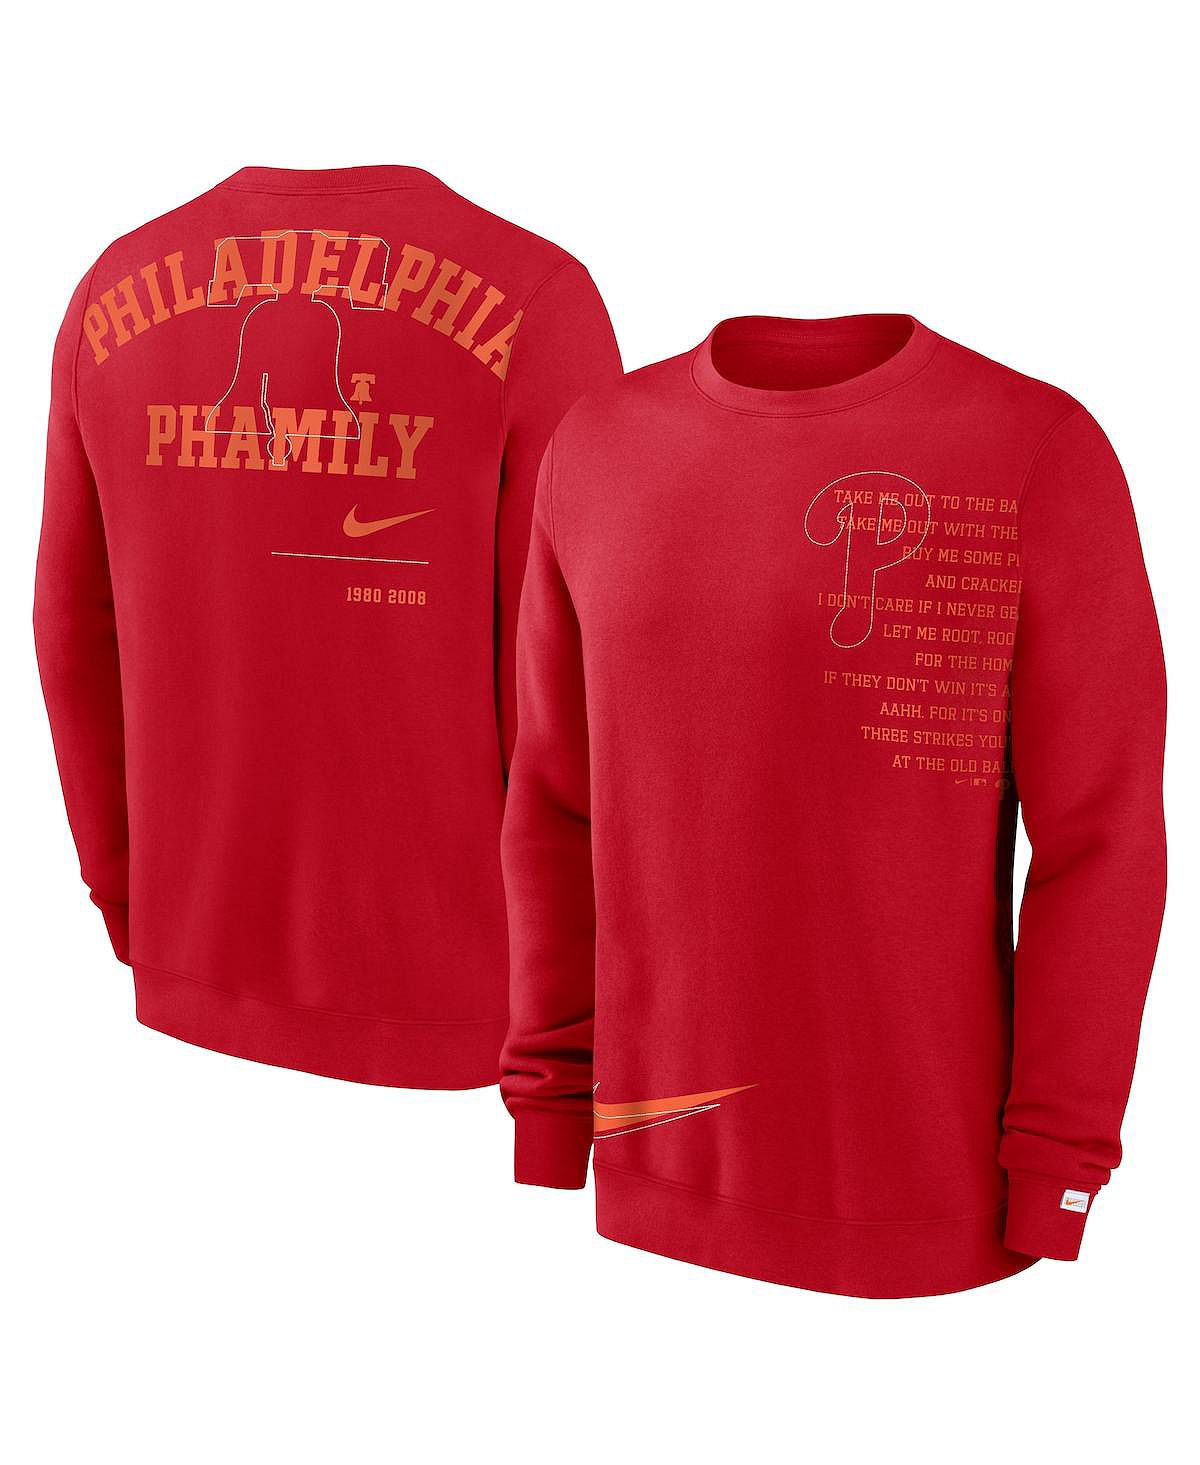 платье freya collection филлис Мужской красный флисовый пуловер Philadelphia Phillies Statement Ball Game Толстовка Nike